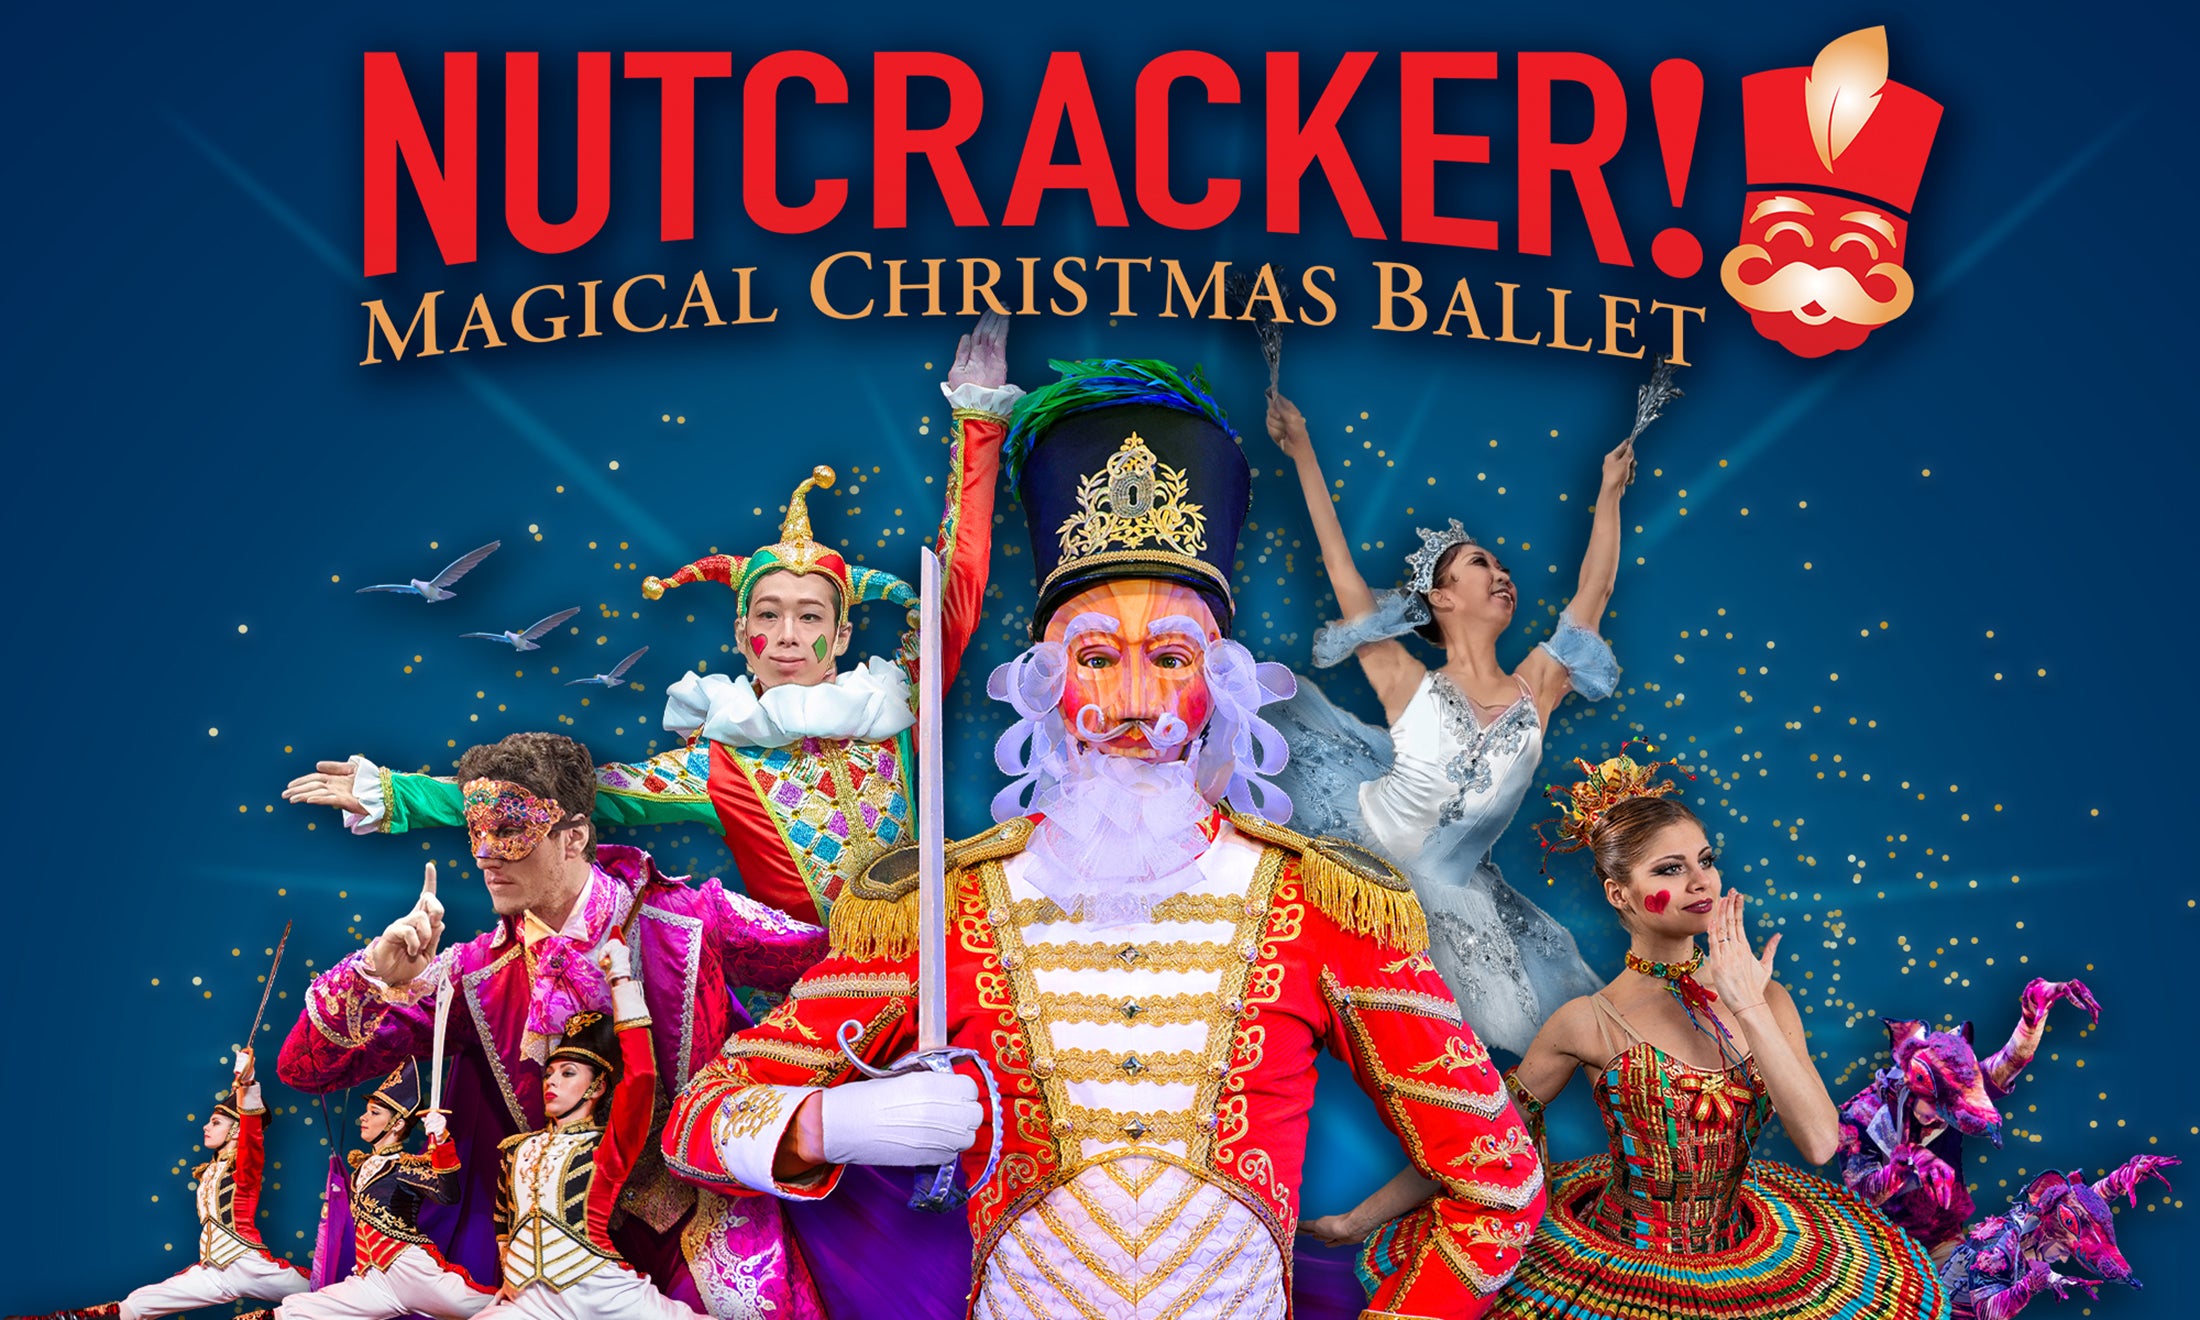 NUTCRACKER! Magical Christmas Ballet - Redding, CA 96001